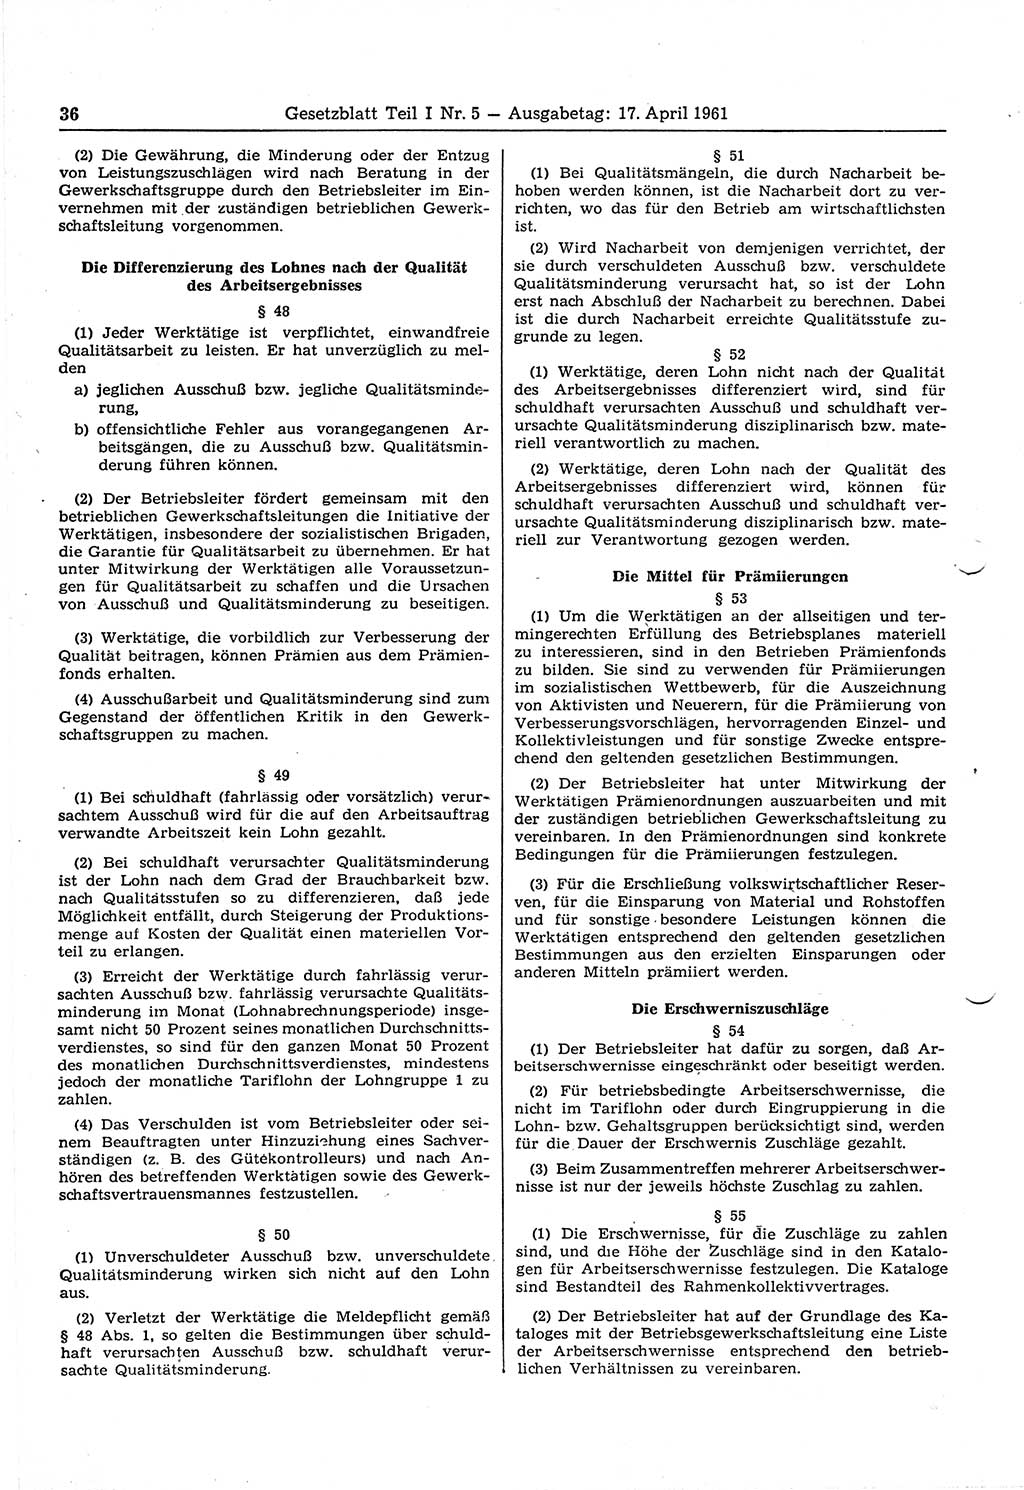 Gesetzblatt (GBl.) der Deutschen Demokratischen Republik (DDR) Teil Ⅰ 1961, Seite 36 (GBl. DDR Ⅰ 1961, S. 36)